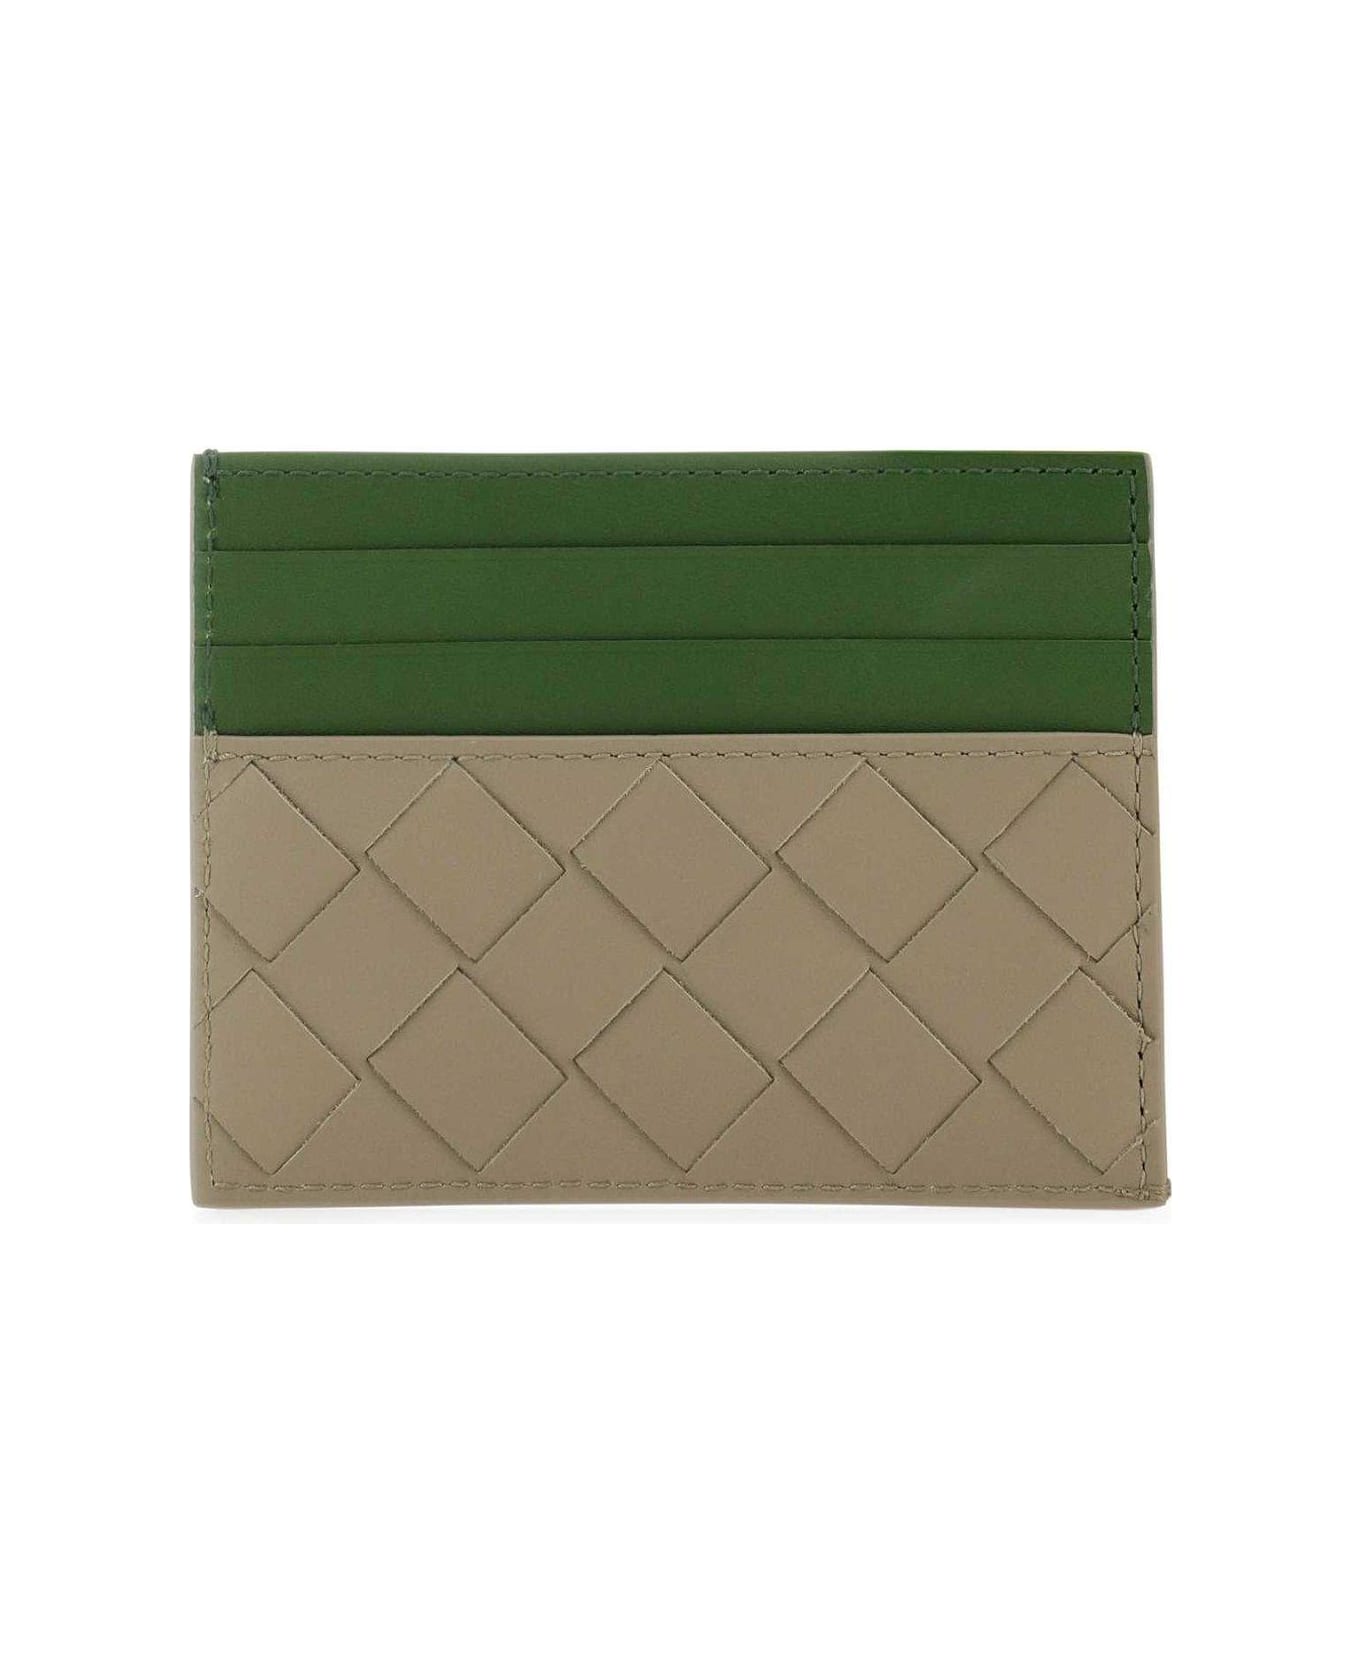 Bottega Veneta Woven Leather Card Holder - Taupe, avocado 財布